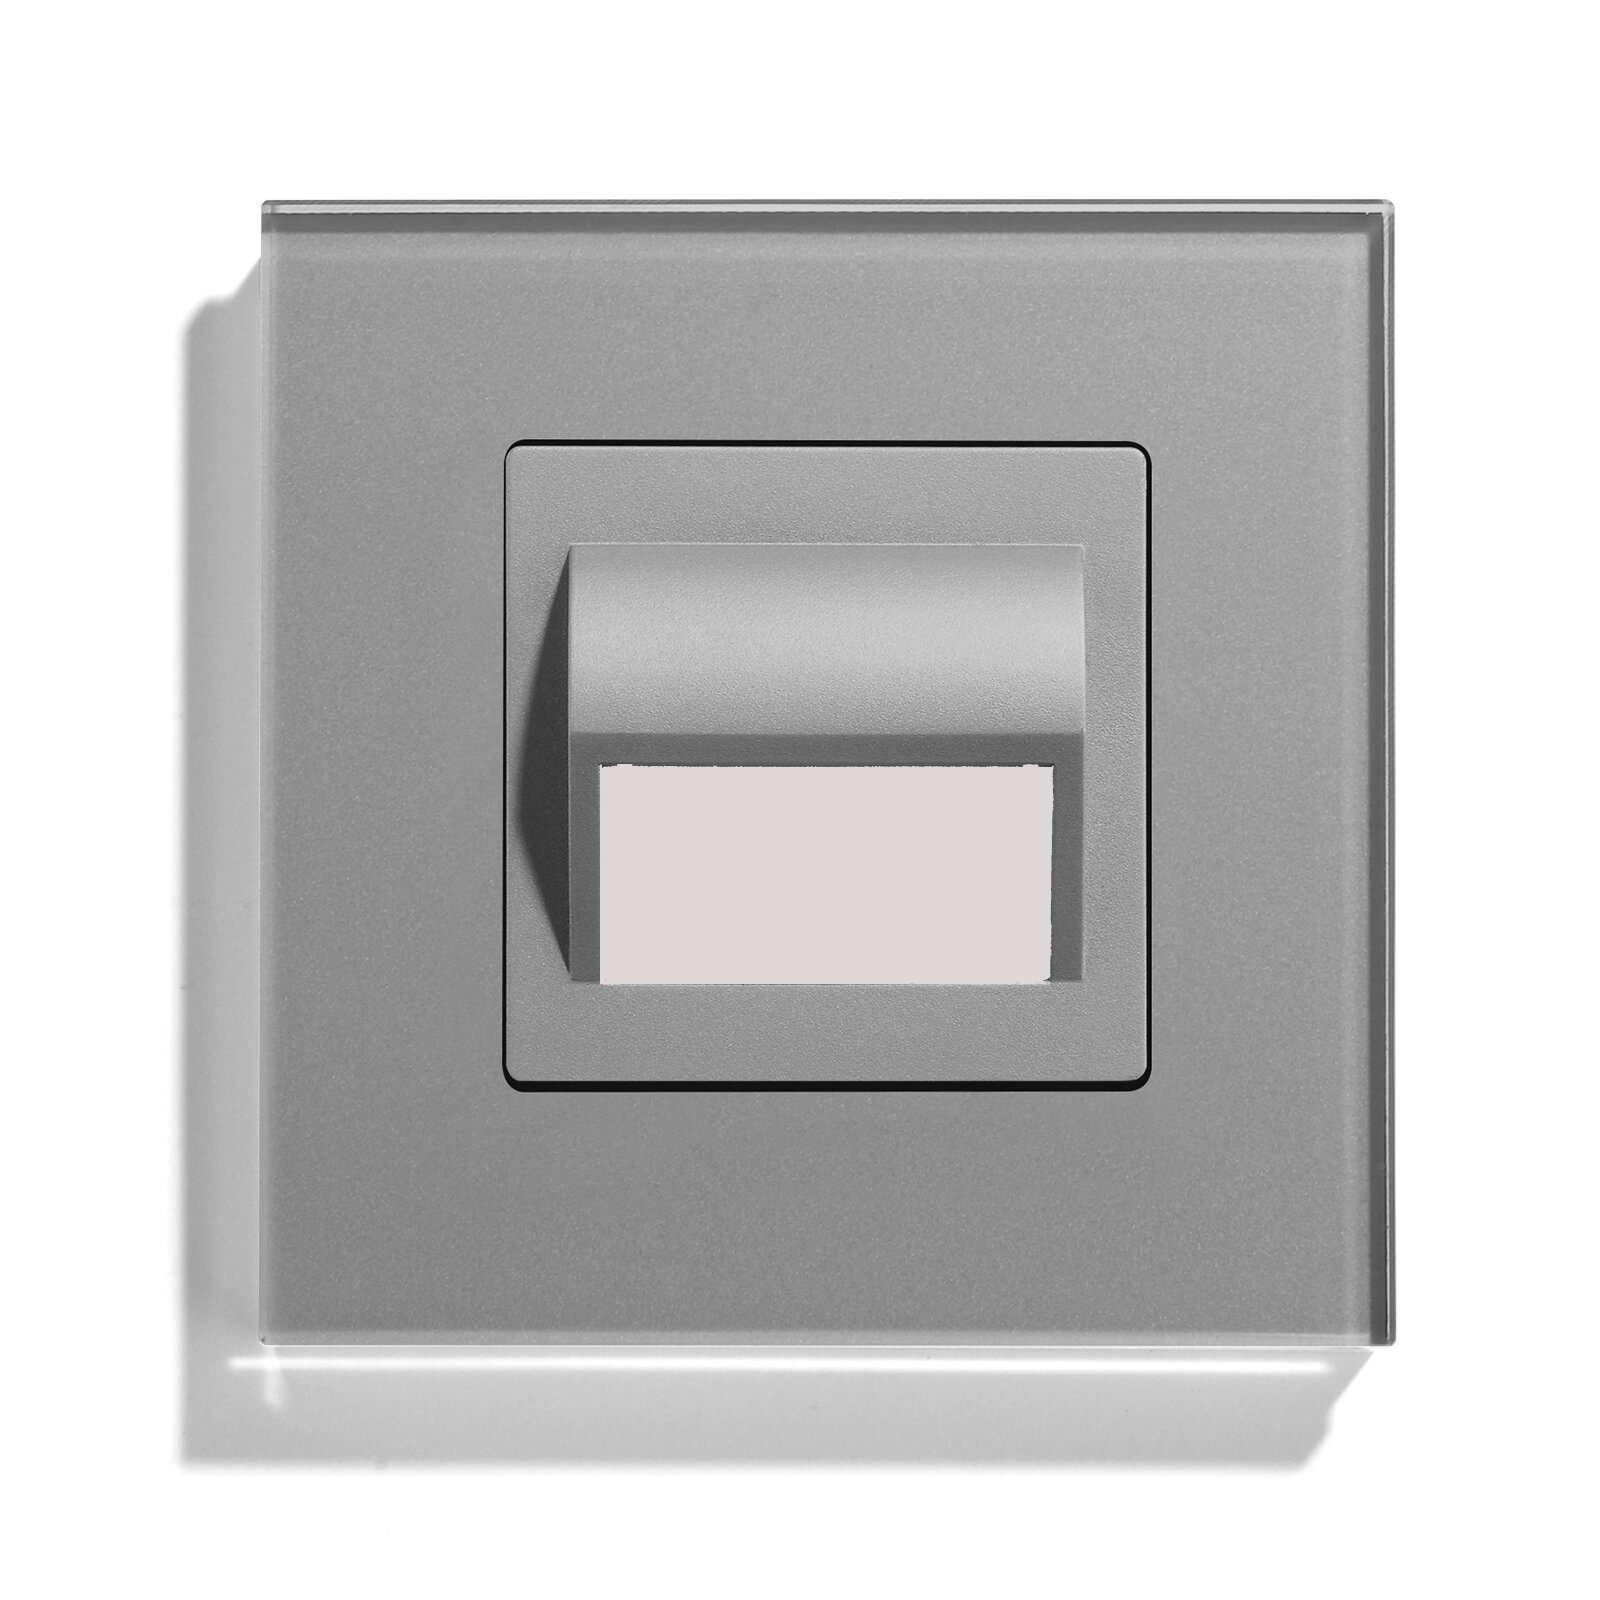 Светодиодный светильник 4000К-4500К для лестниц , подсветка пола, коридора, рамка 86х86мм стекло, цвет серый